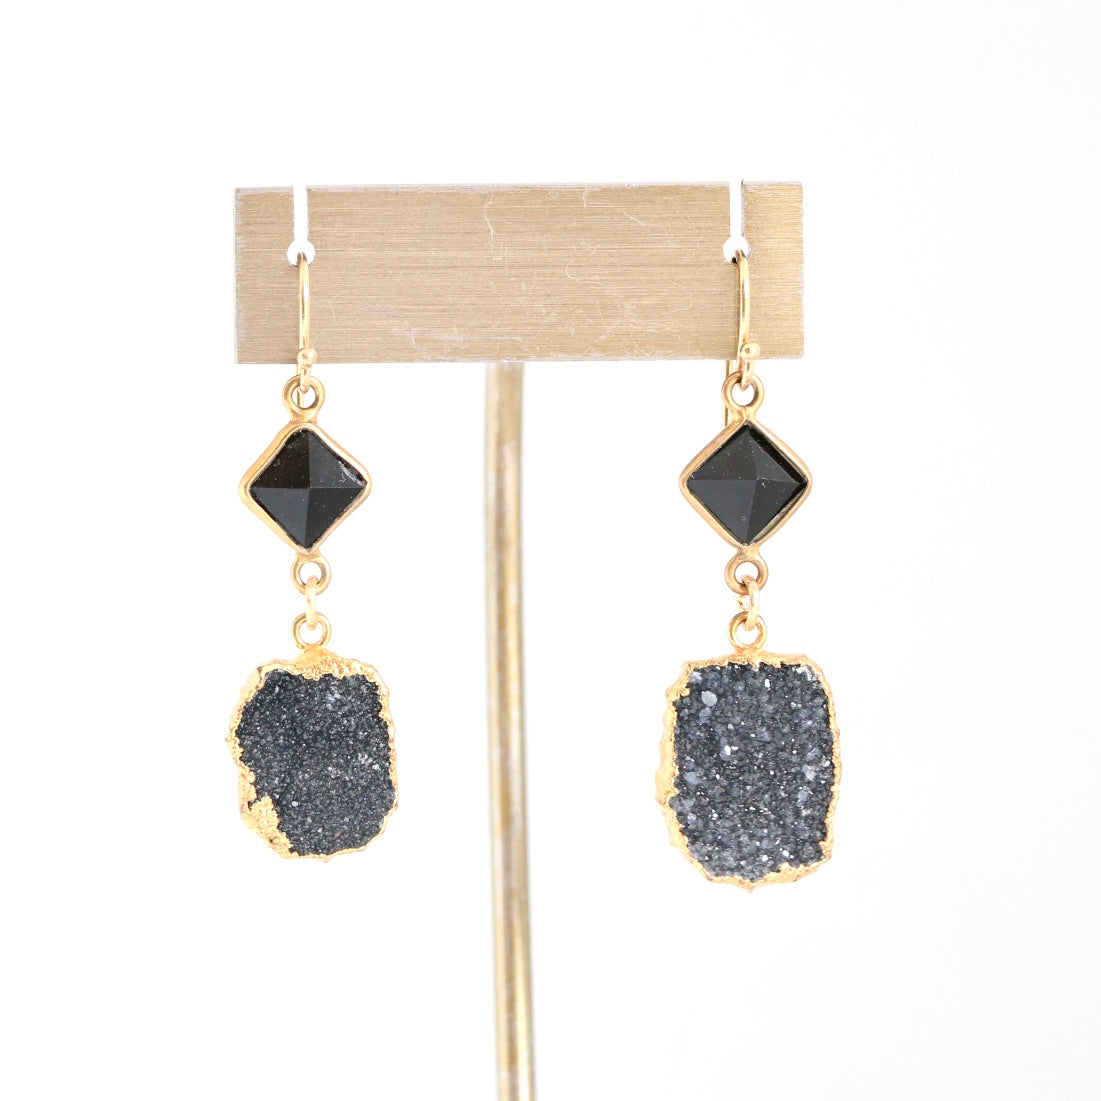 Black Onyx and Druzy Gold Earrings Earrings Sweet Revenge Jewelry   